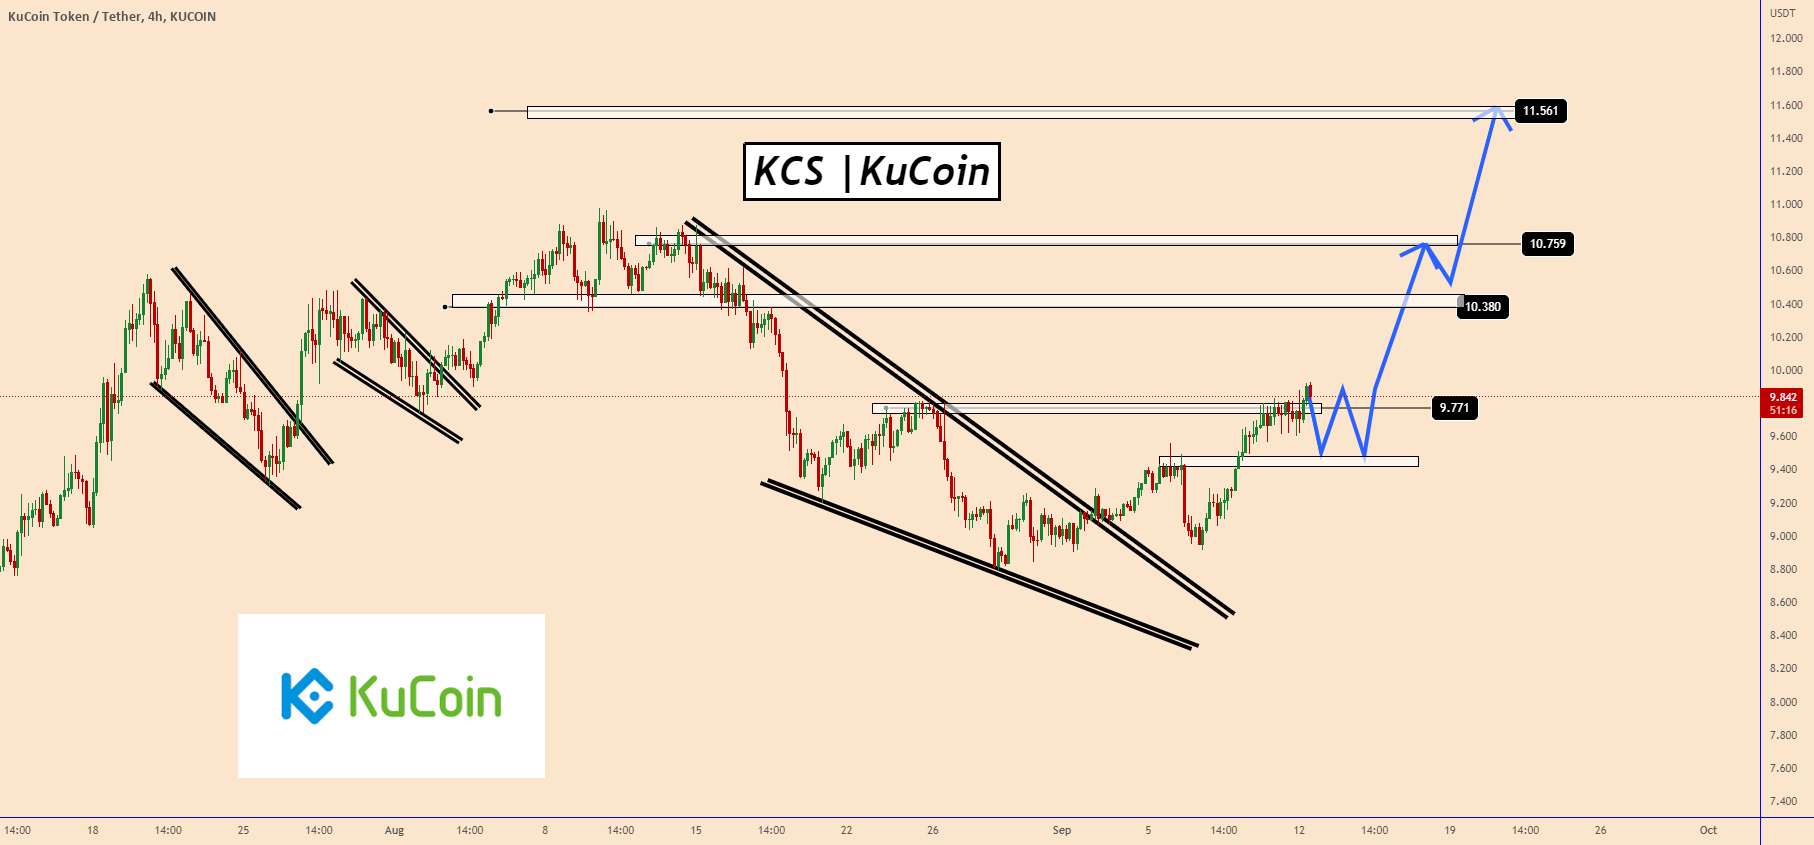  تحلیل KuCoin Token - KCS| KuCoin | گاوها قیمت را تحت کنترل دارند